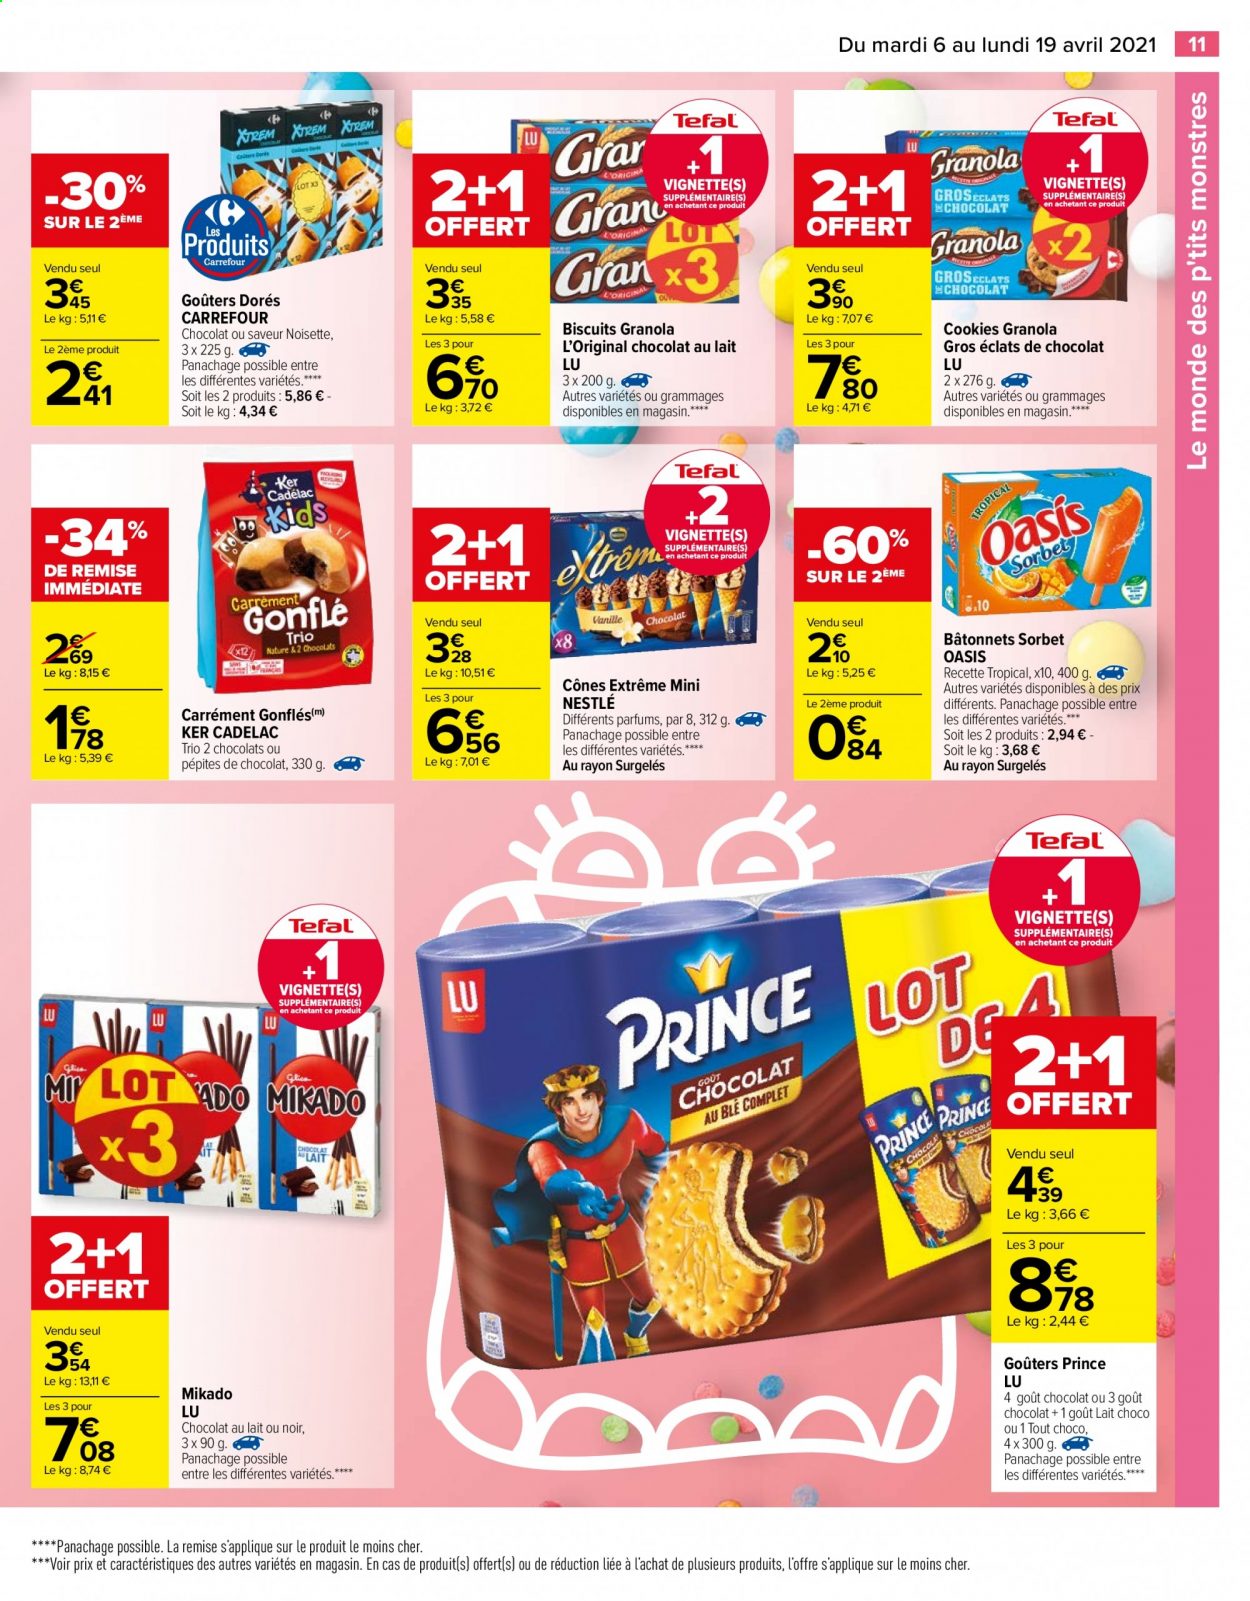 thumbnail - Catalogue Carrefour Hypermarchés - 06/04/2021 - 19/04/2021 - Produits soldés - Nestlé, Oasis, sorbet, biscuits, granola, Mikado, cookies, Prince Lu, LU, cônes. Page 11.